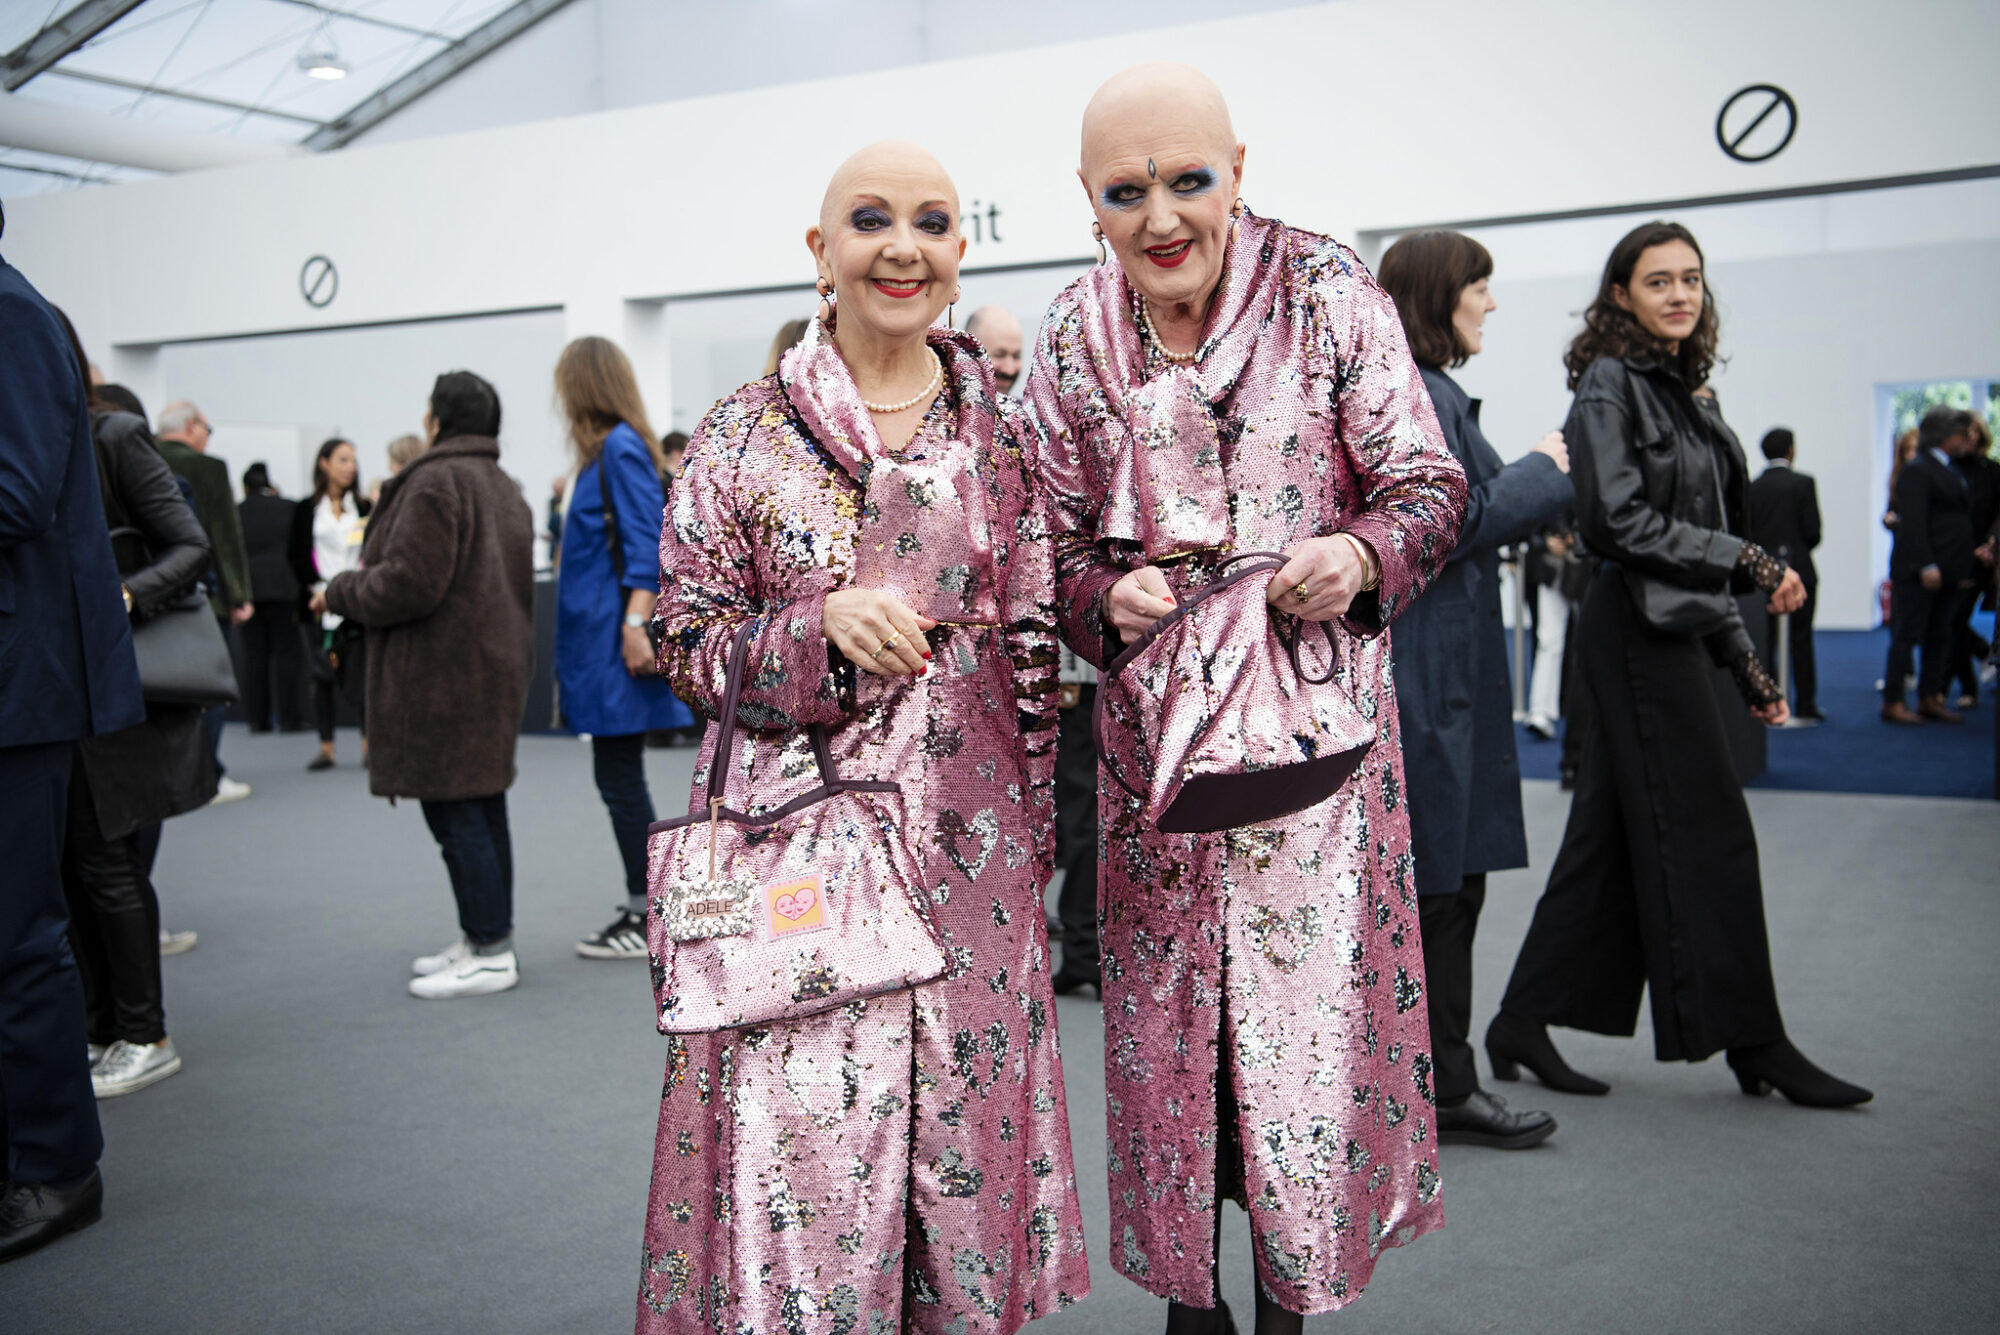 Frieze Art Fair 2019, London, UK. Photo by Linda Nylind. 2/10/2019.